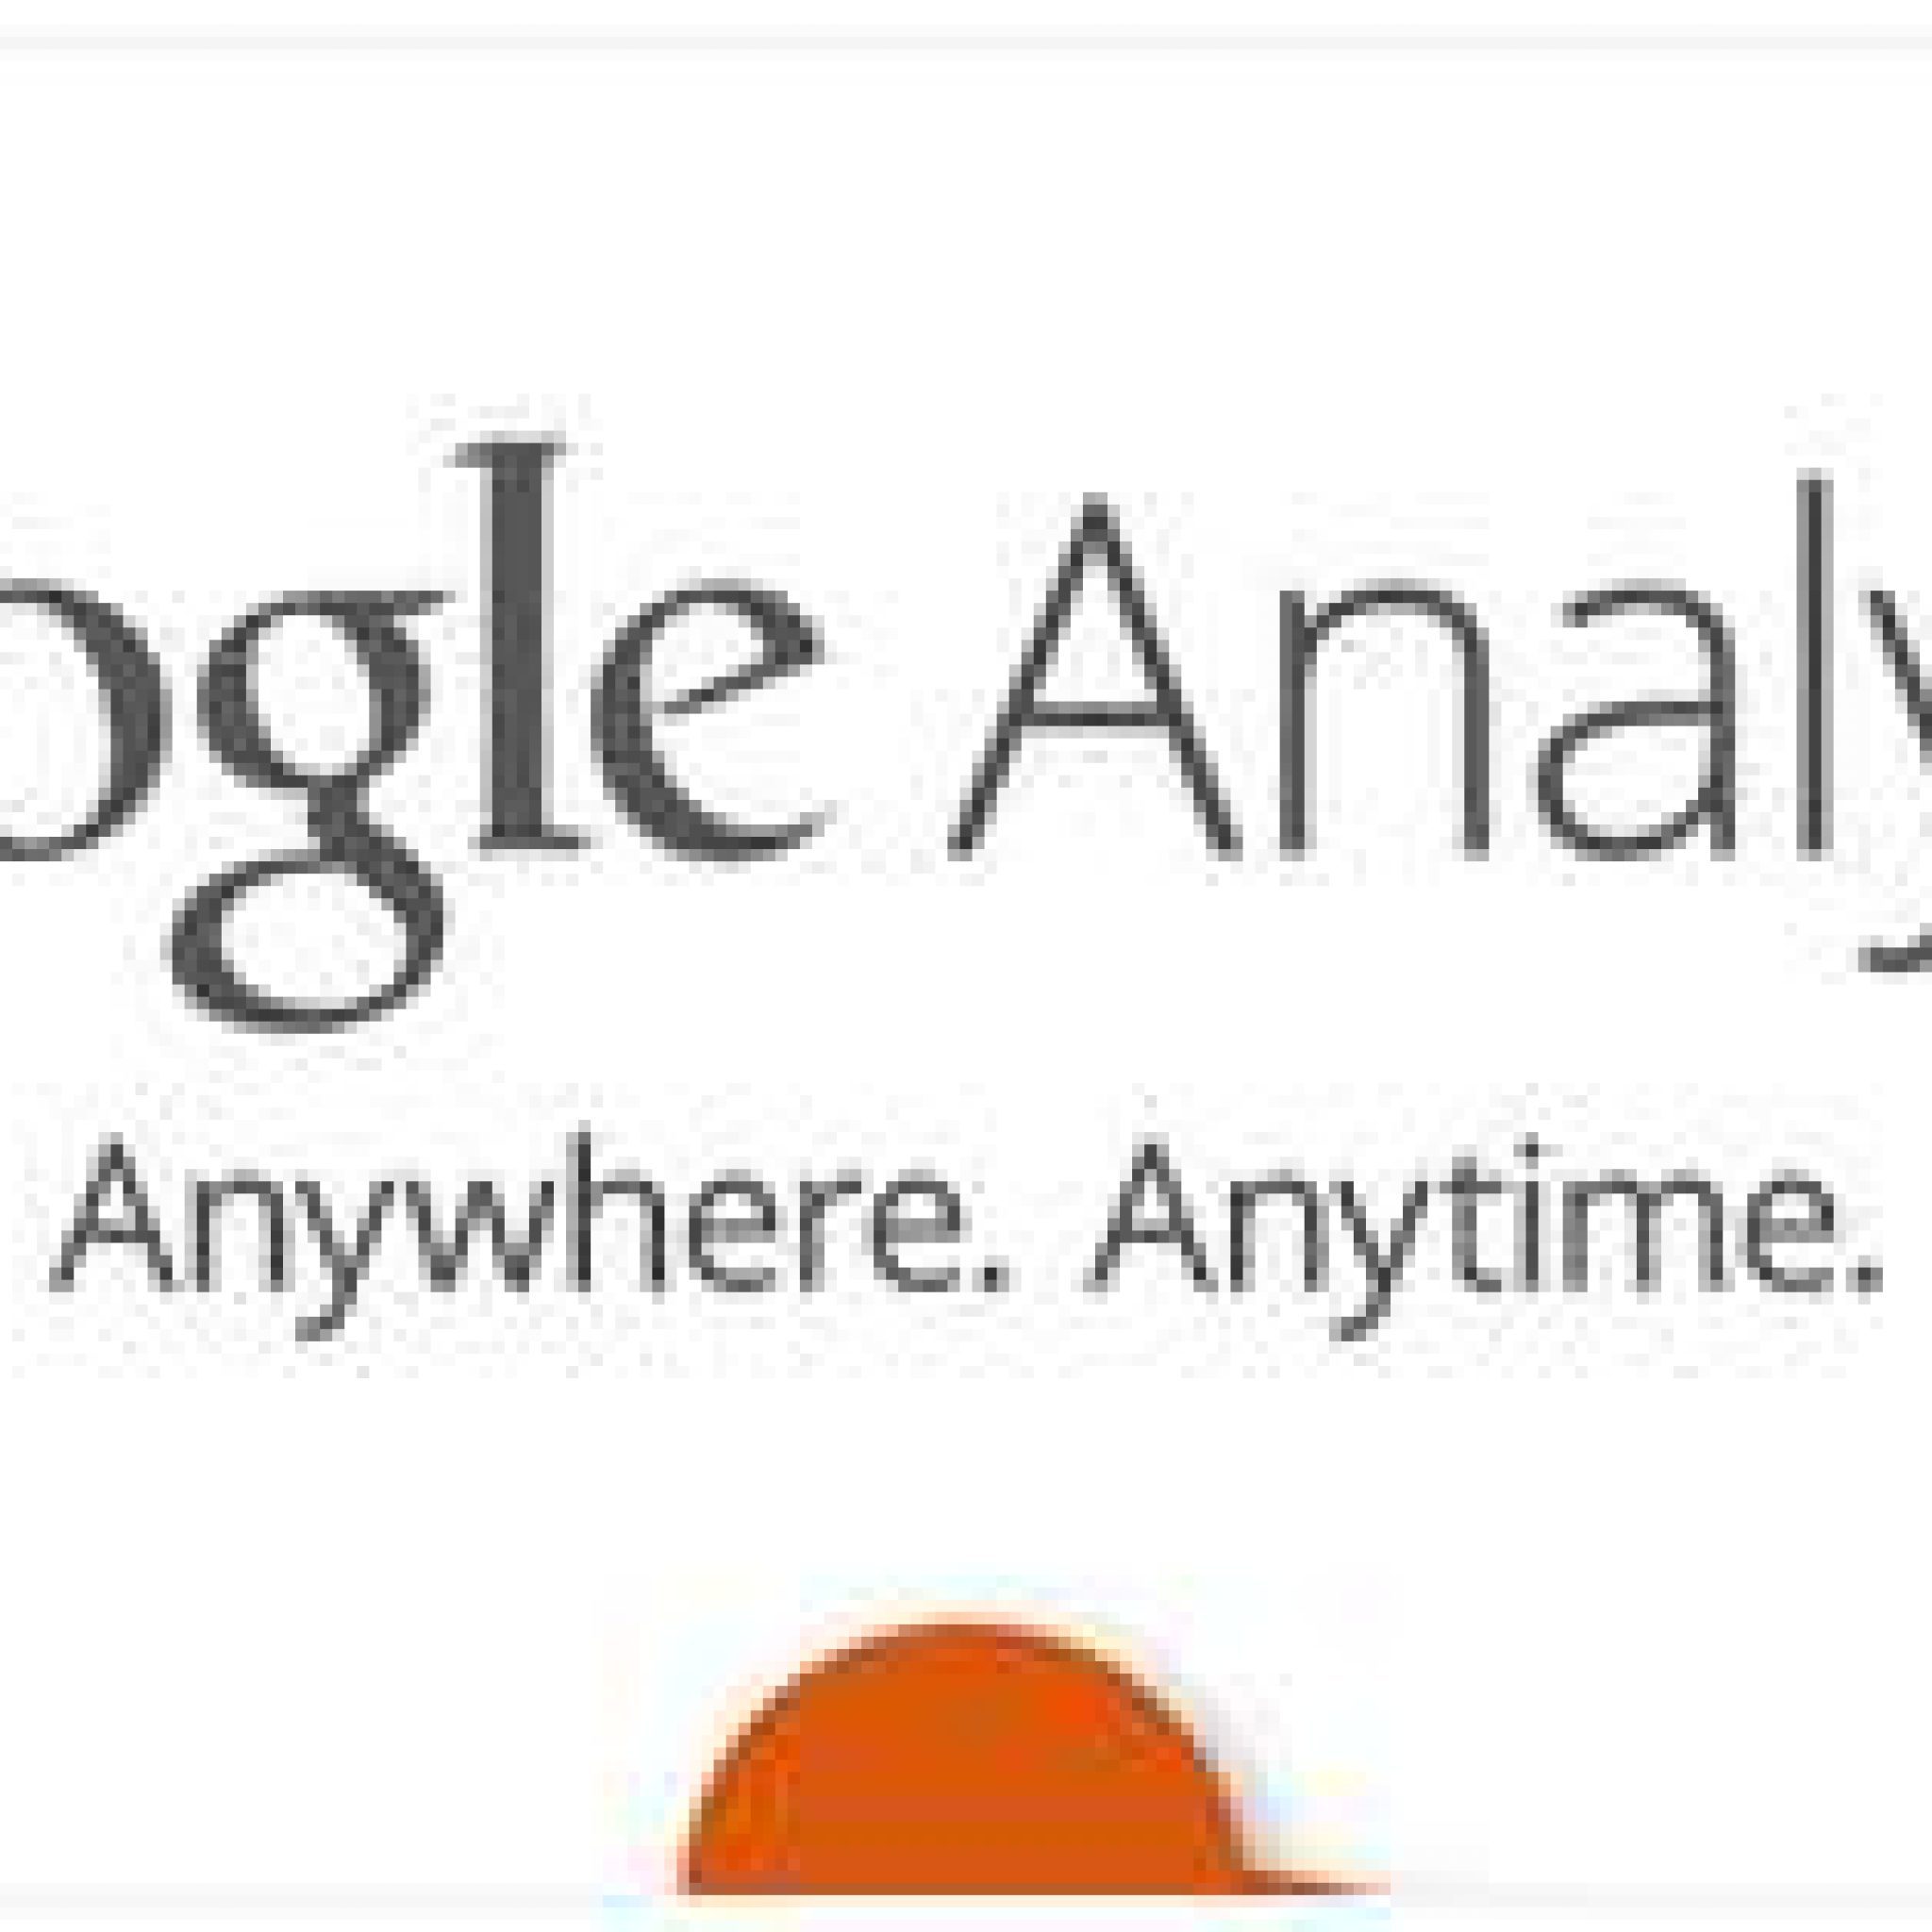 Google Analytics: Atajos Del Teclado